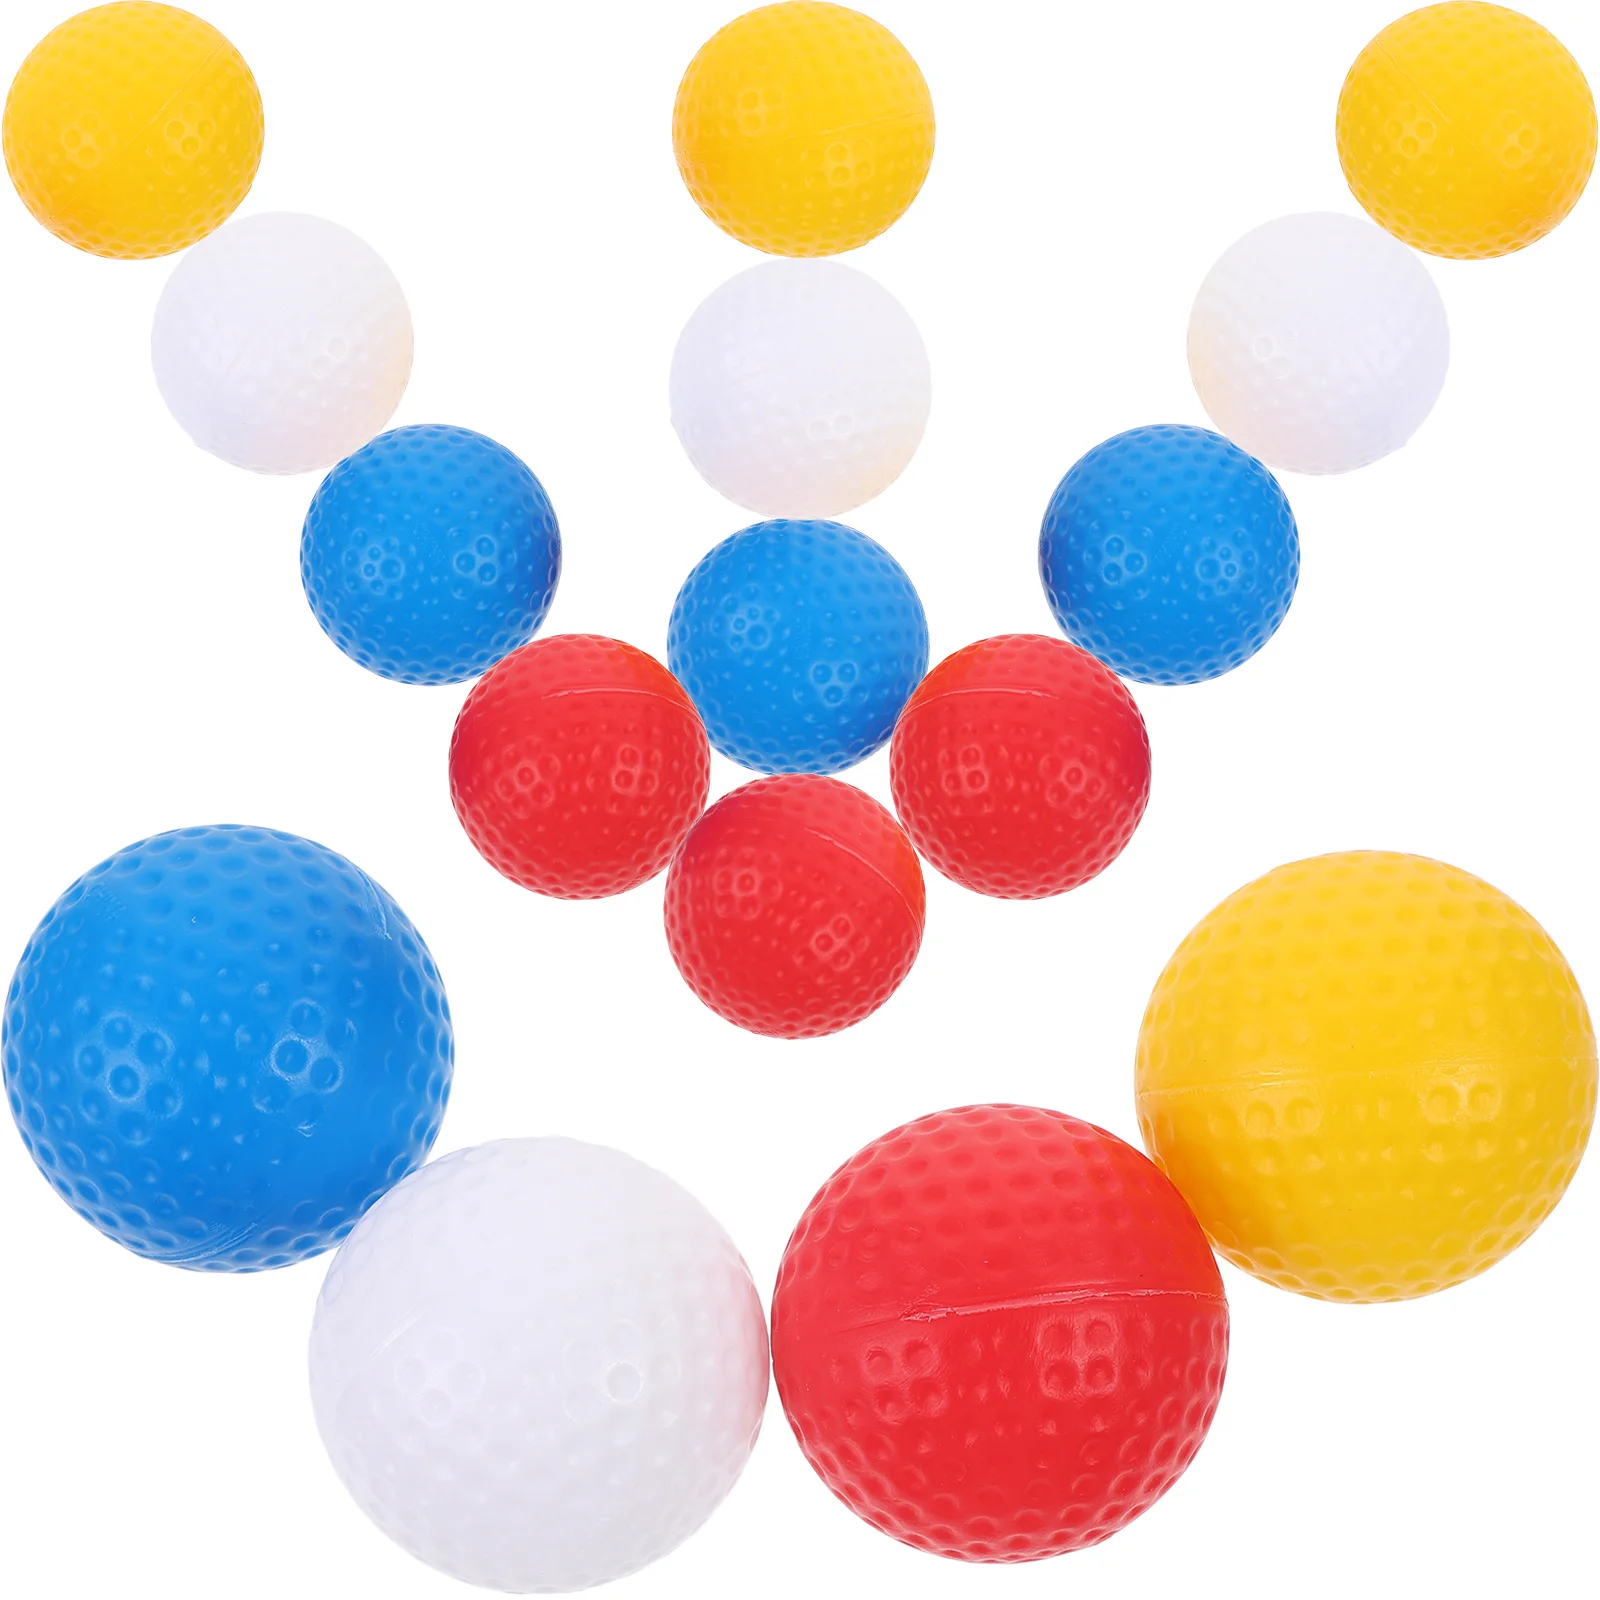 Мячи для игры в гольф, Цветные мячи для гольфа, маленькие мячи для гольфа, портативные мячи для игры в гольф футбольные мячи molten для взрослых и молодежи стандартные тренировочные мячи для игры в футбол для дома и улицы высокое качество размер 4 5